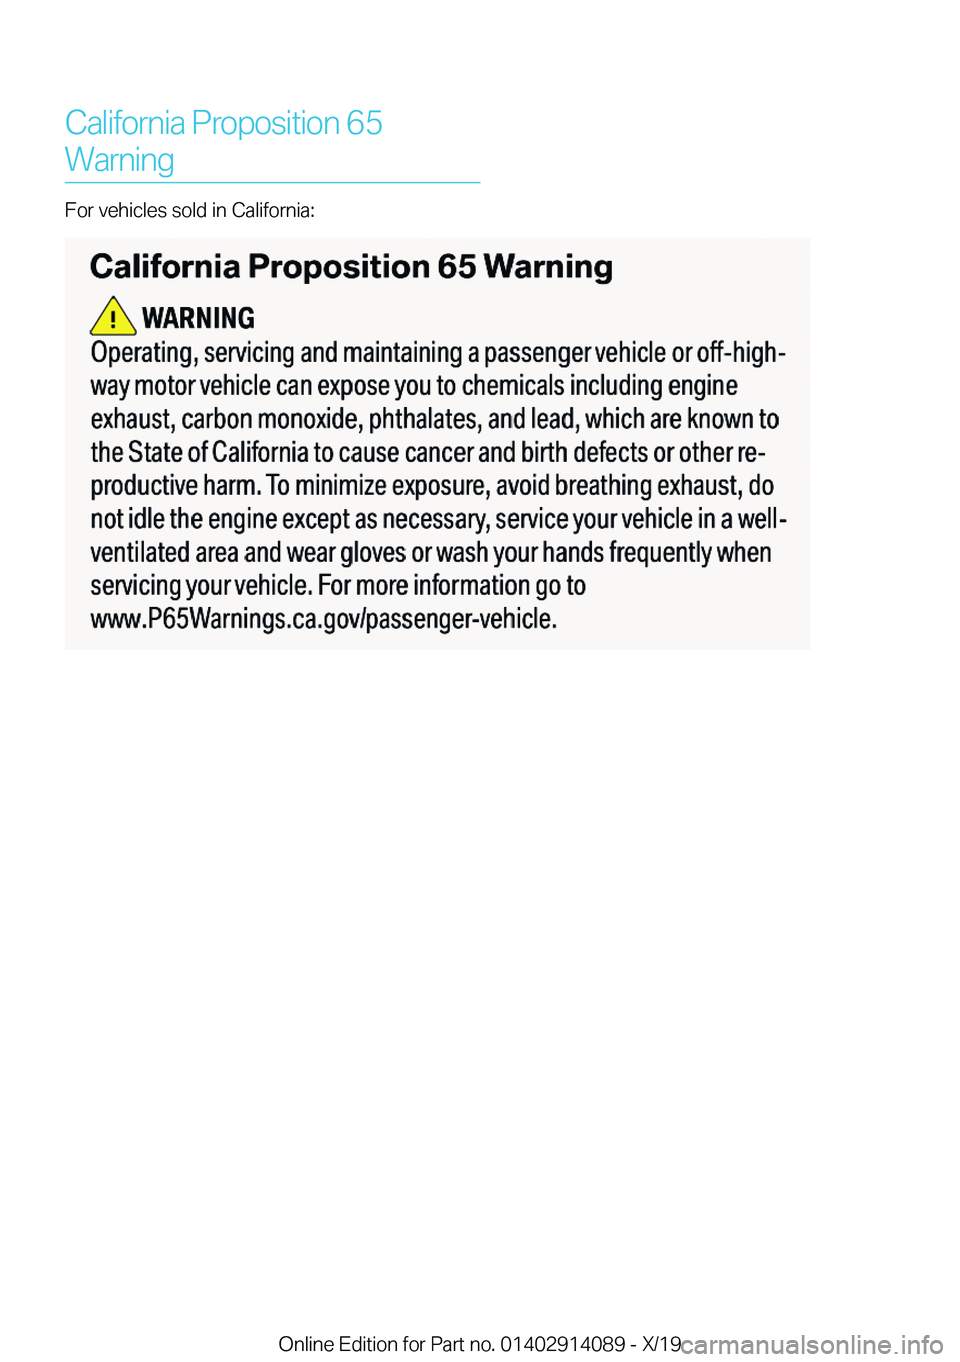 BMW I8 2020  Owners Manual �C�a�l�i�f�o�r�n�i�a��P�r�o�p�o�s�i�t�i�o�n��6�5�W�a�r�n�i�n�g
�F�o�r��v�e�h�i�c�l�e�s��s�o�l�d��i�n��C�a�l�i�f�o�r�n�i�a�:
�O�n�l�i�n�e��E�d�i�t�i�o�n��f�o�r��P�a�r�t��n�o�.��0�1�4�0�2�9�1